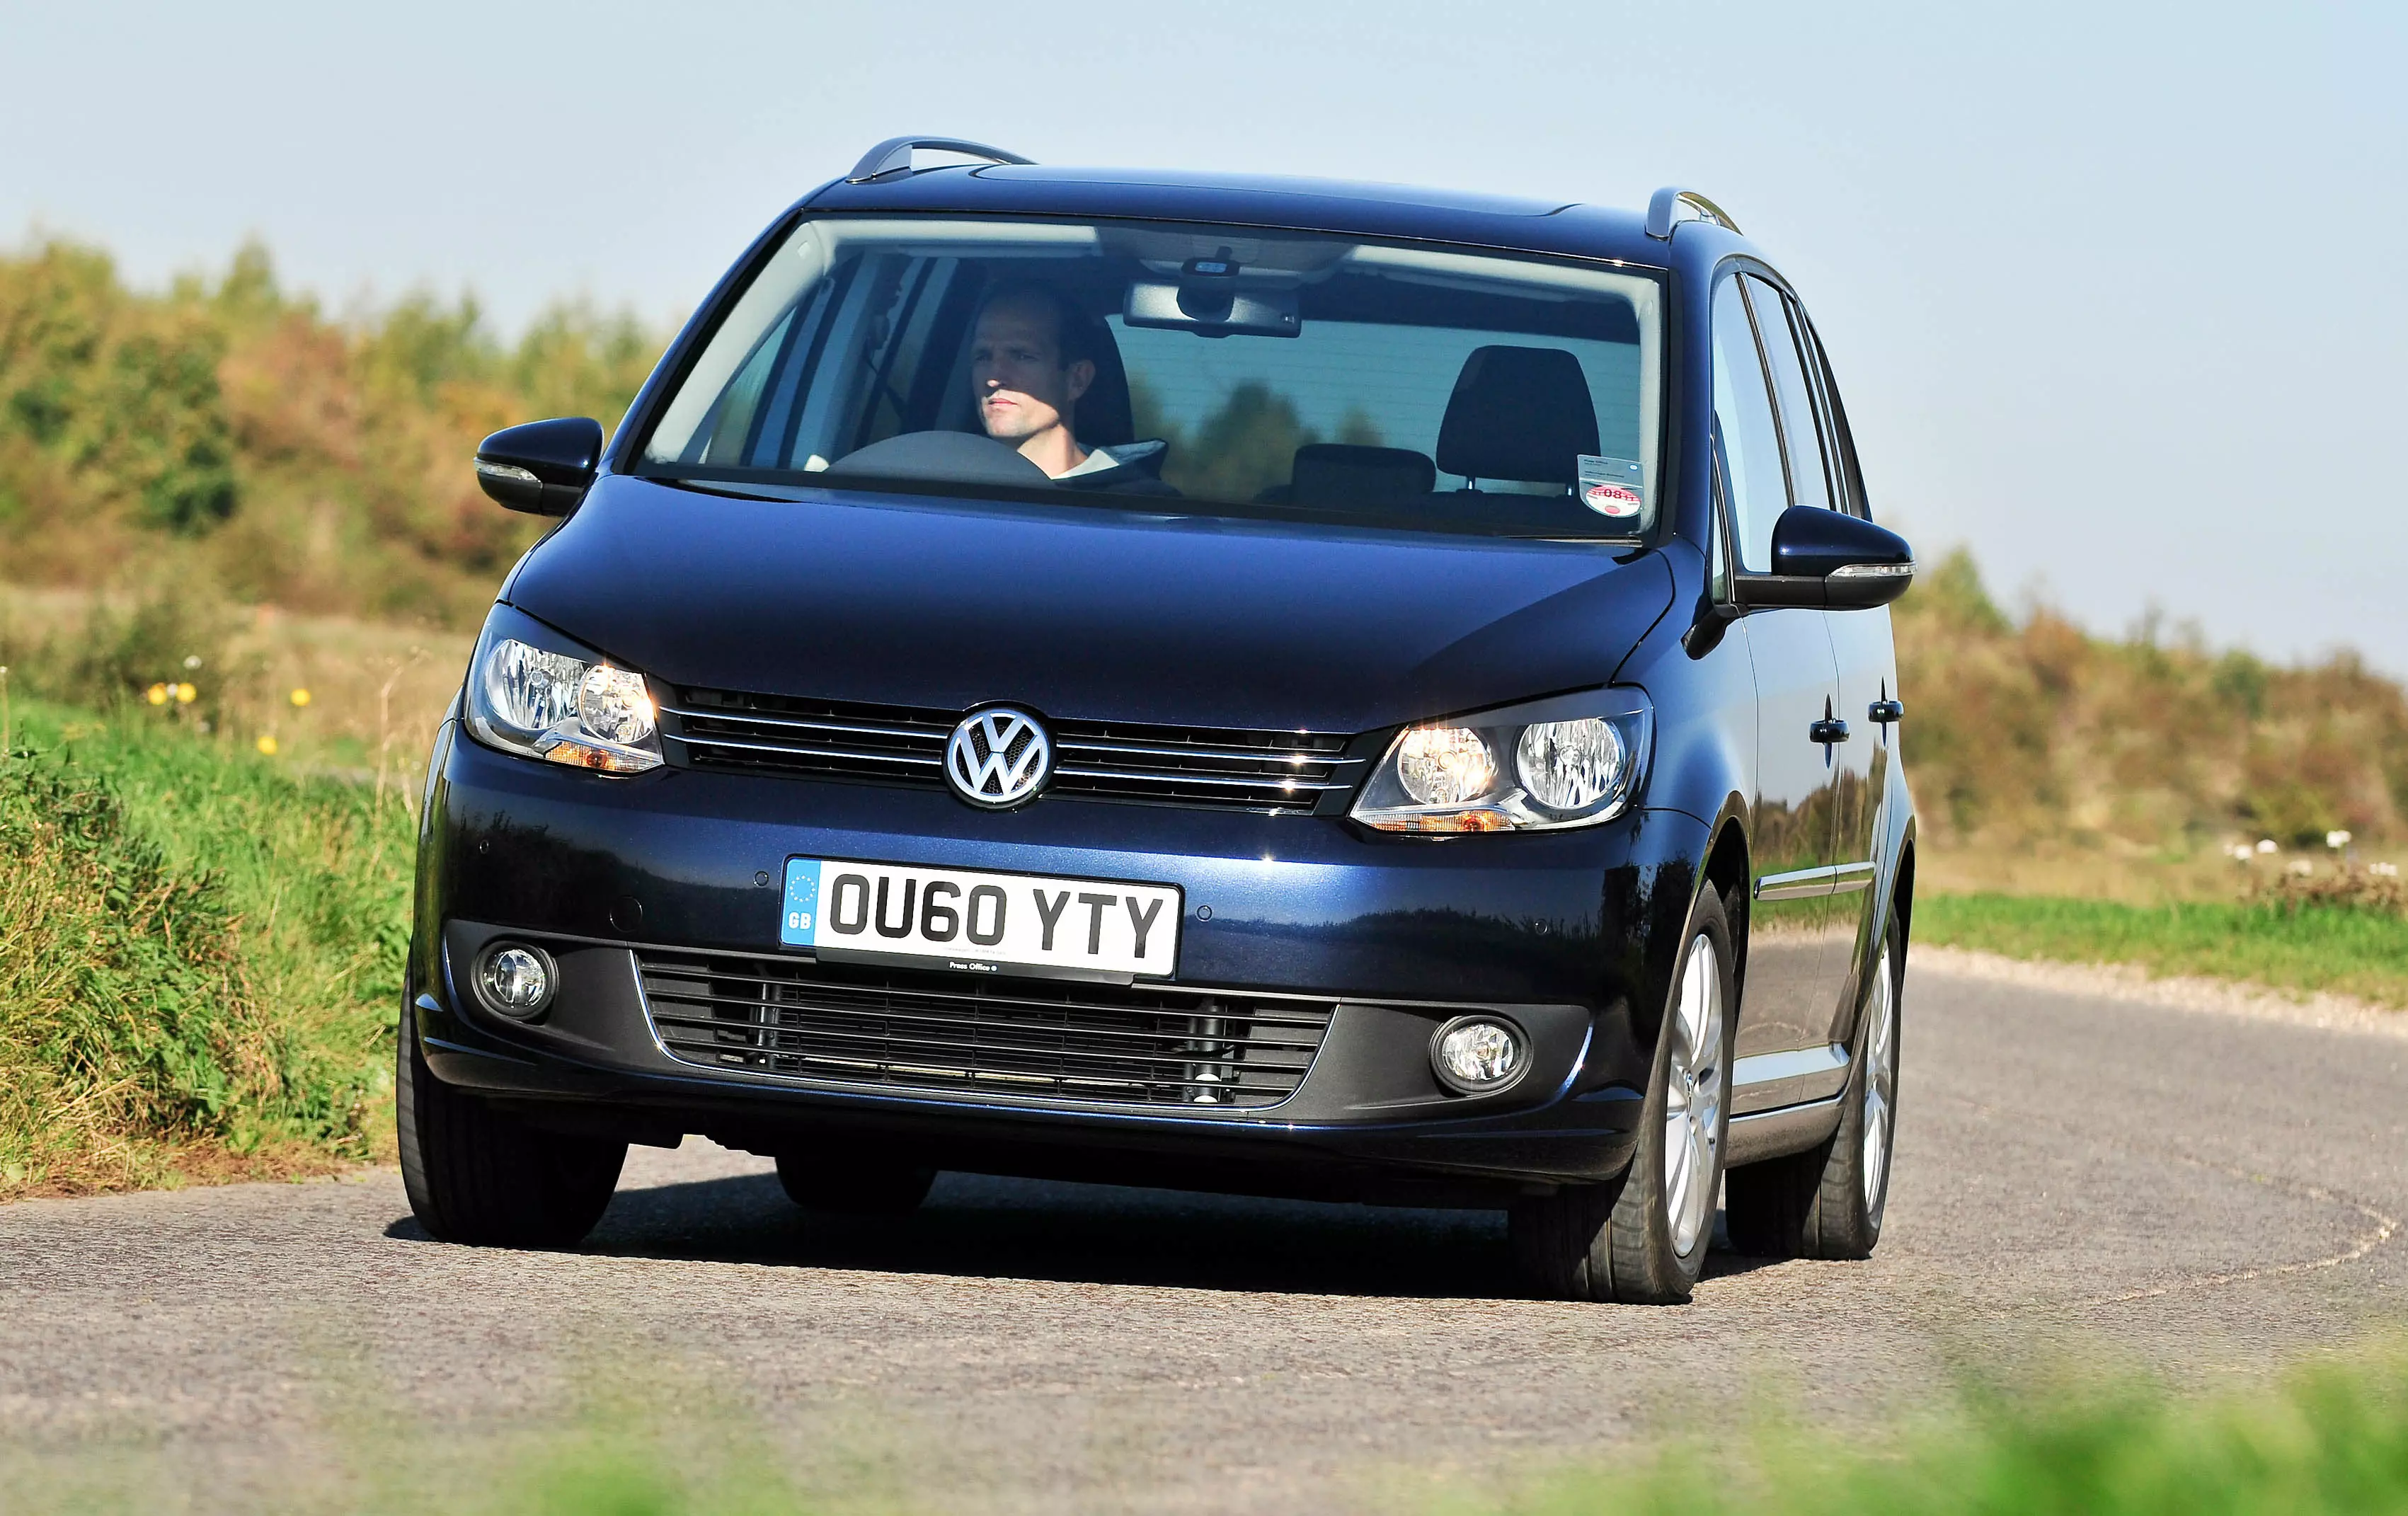 VW Touran Mk1 common problems (2003 - 2015)